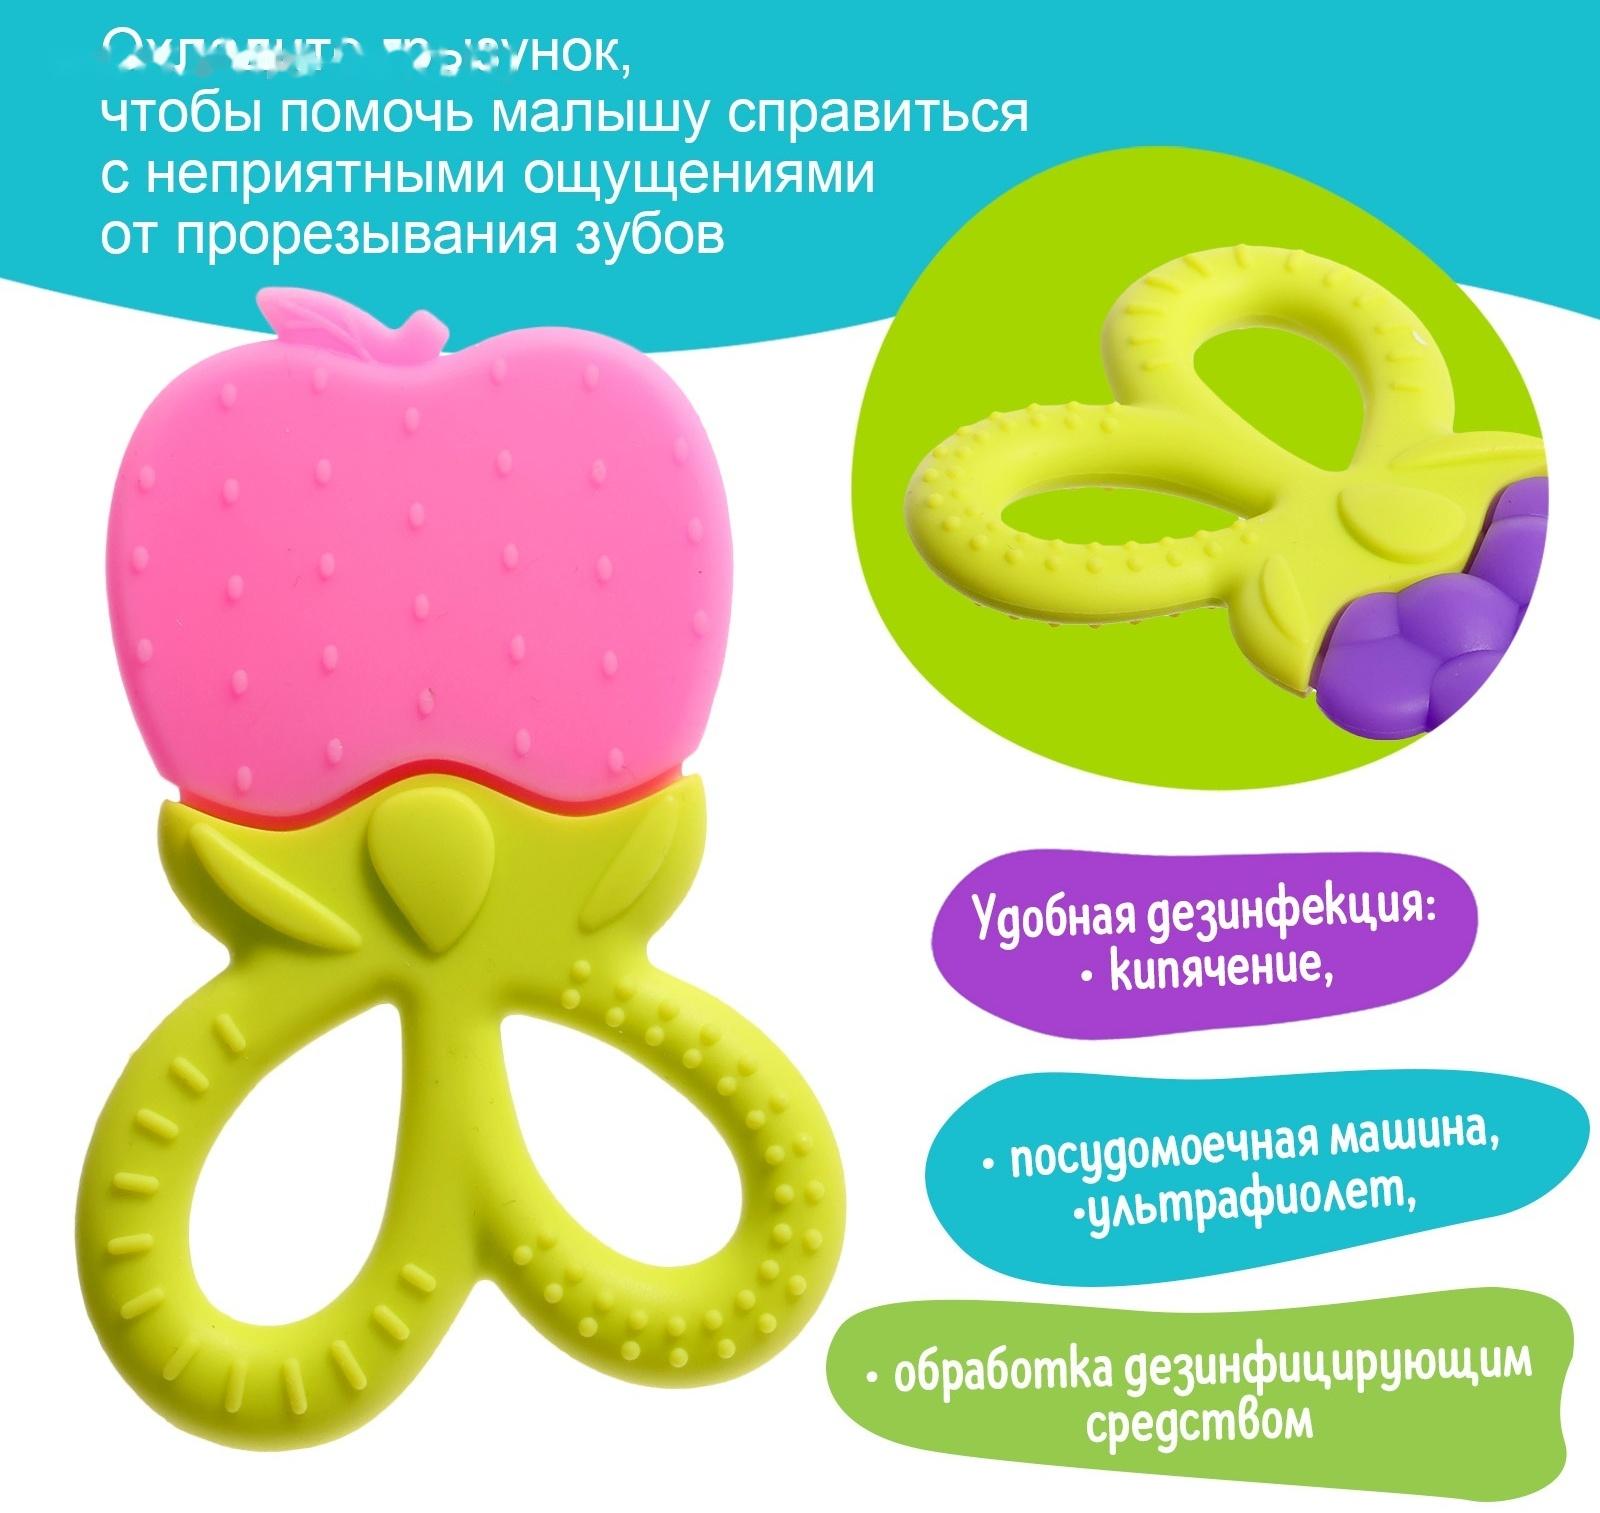 Прорезыватель для зубов детский «Фрукты-ягоды», МИКС